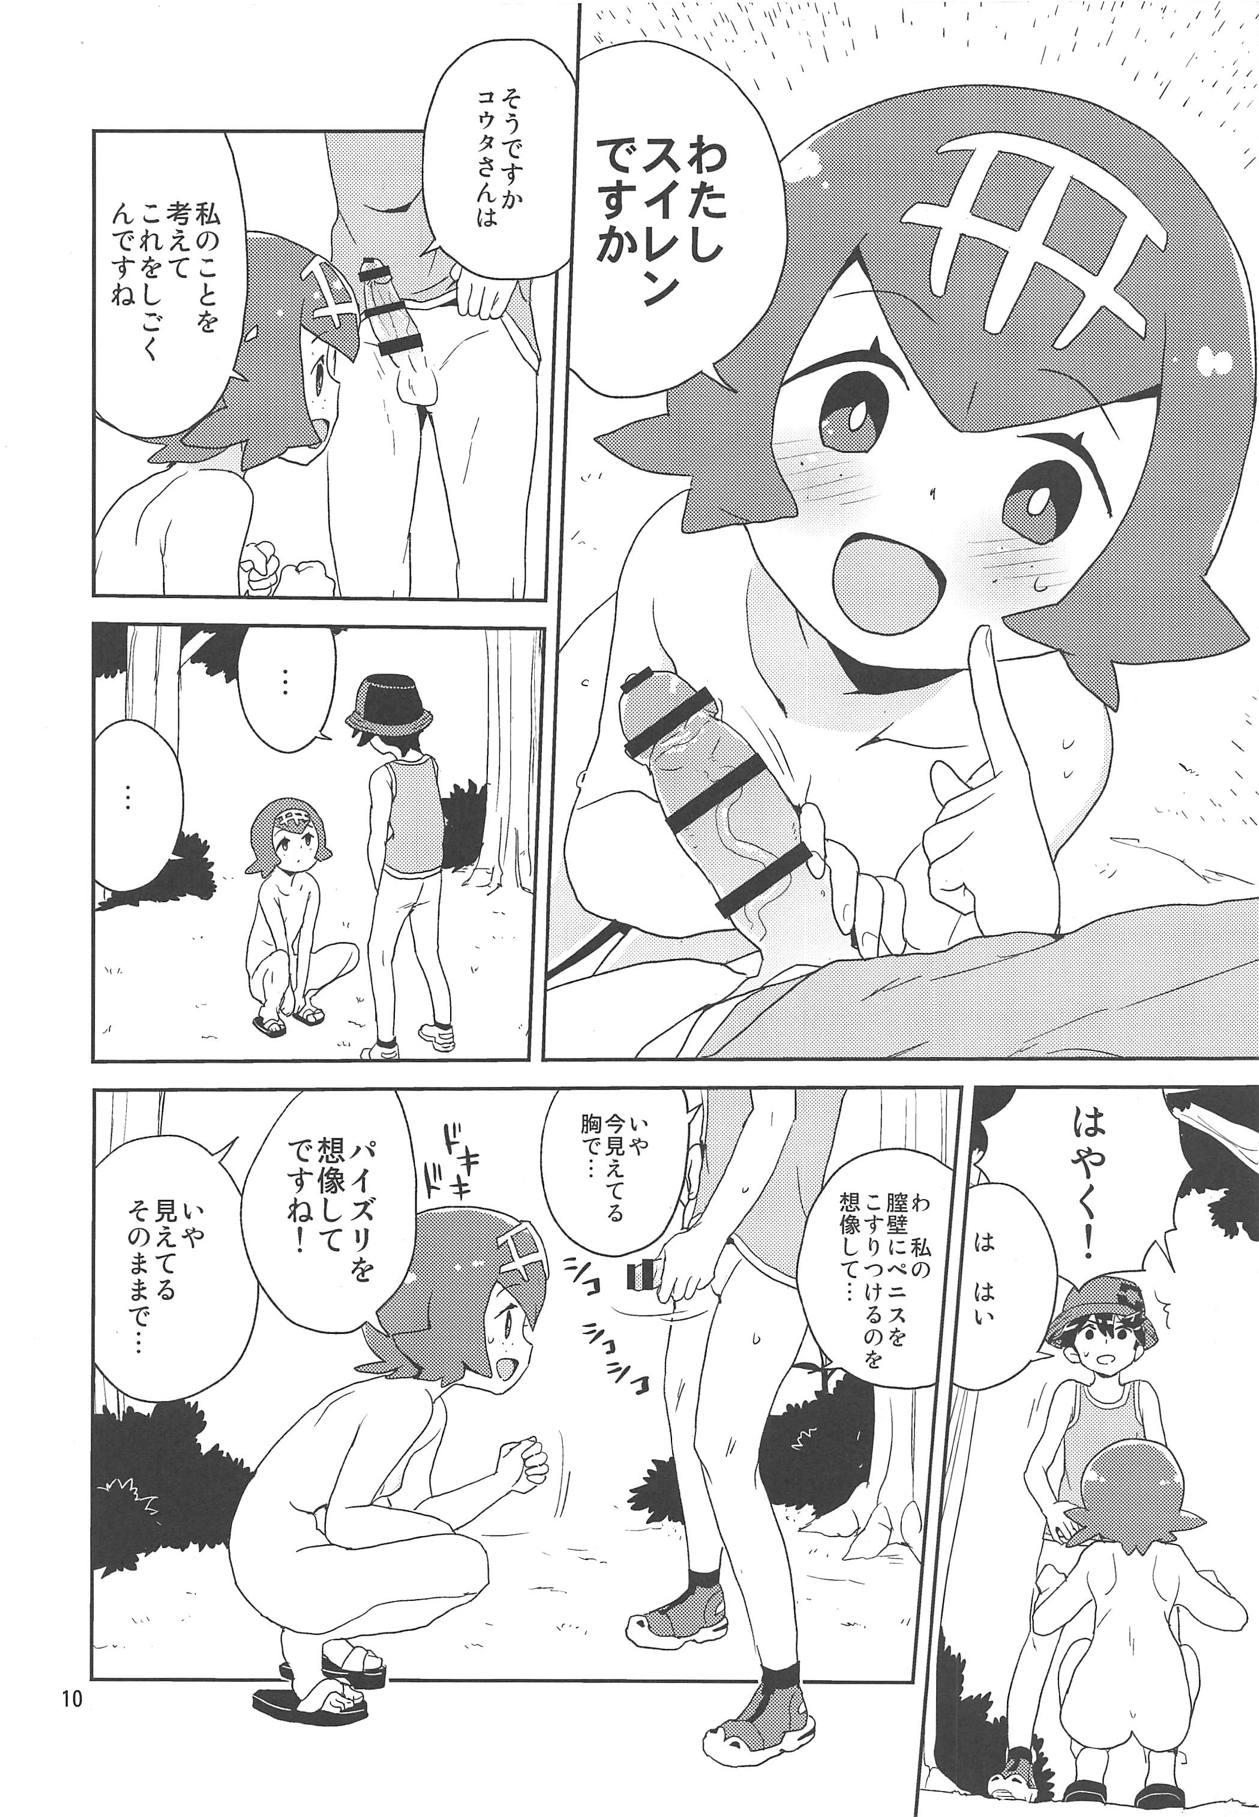 Camgirls A! Yasei no Suiren ga Tobidashite Kita! - Pokemon Blowjob - Page 8